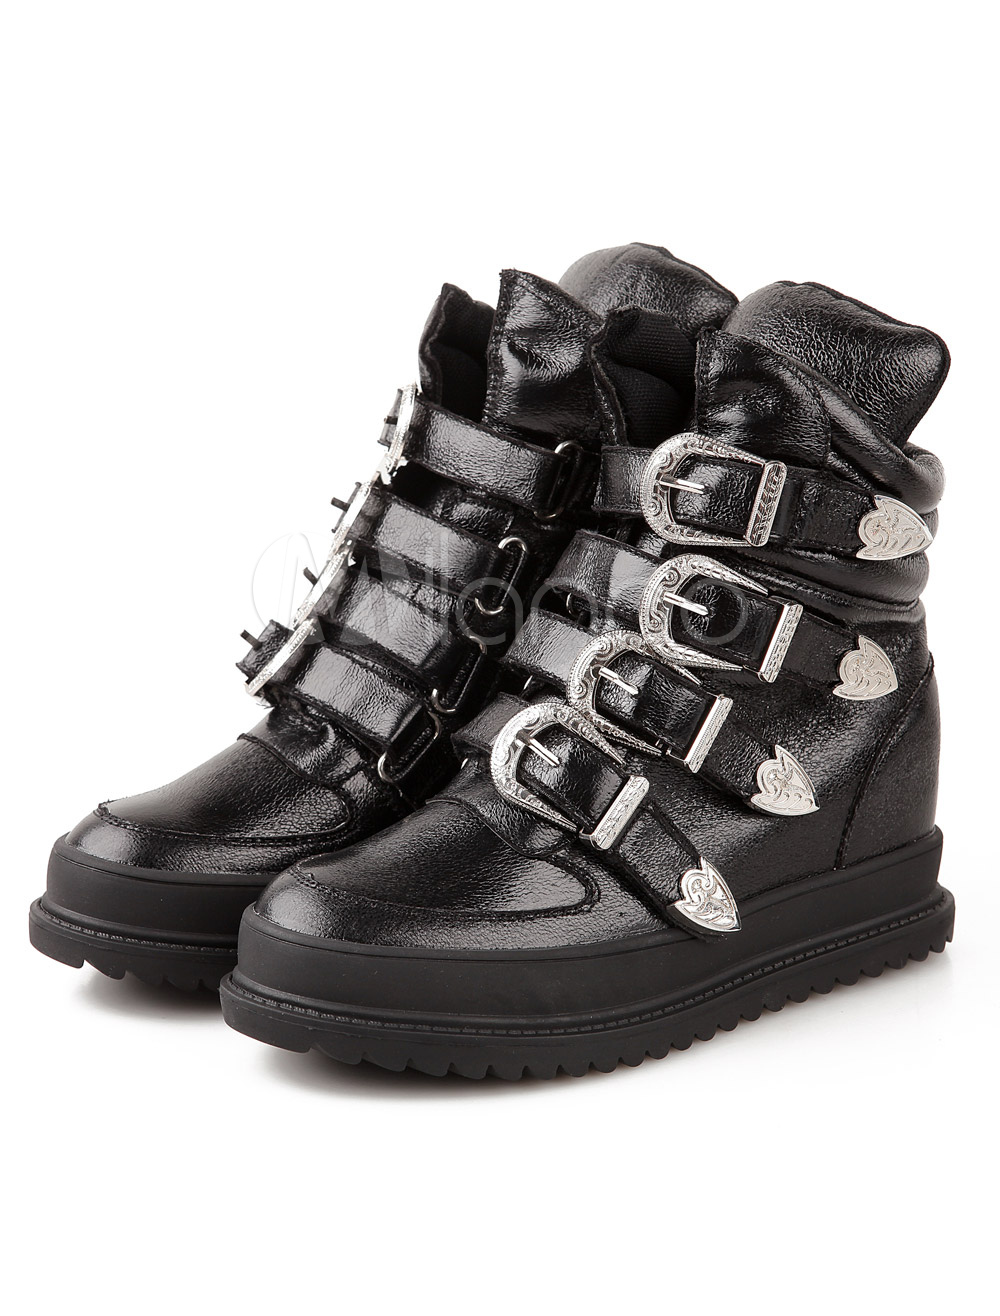 PU Leather Sneakers With Hidden Heels - Milanoo.com